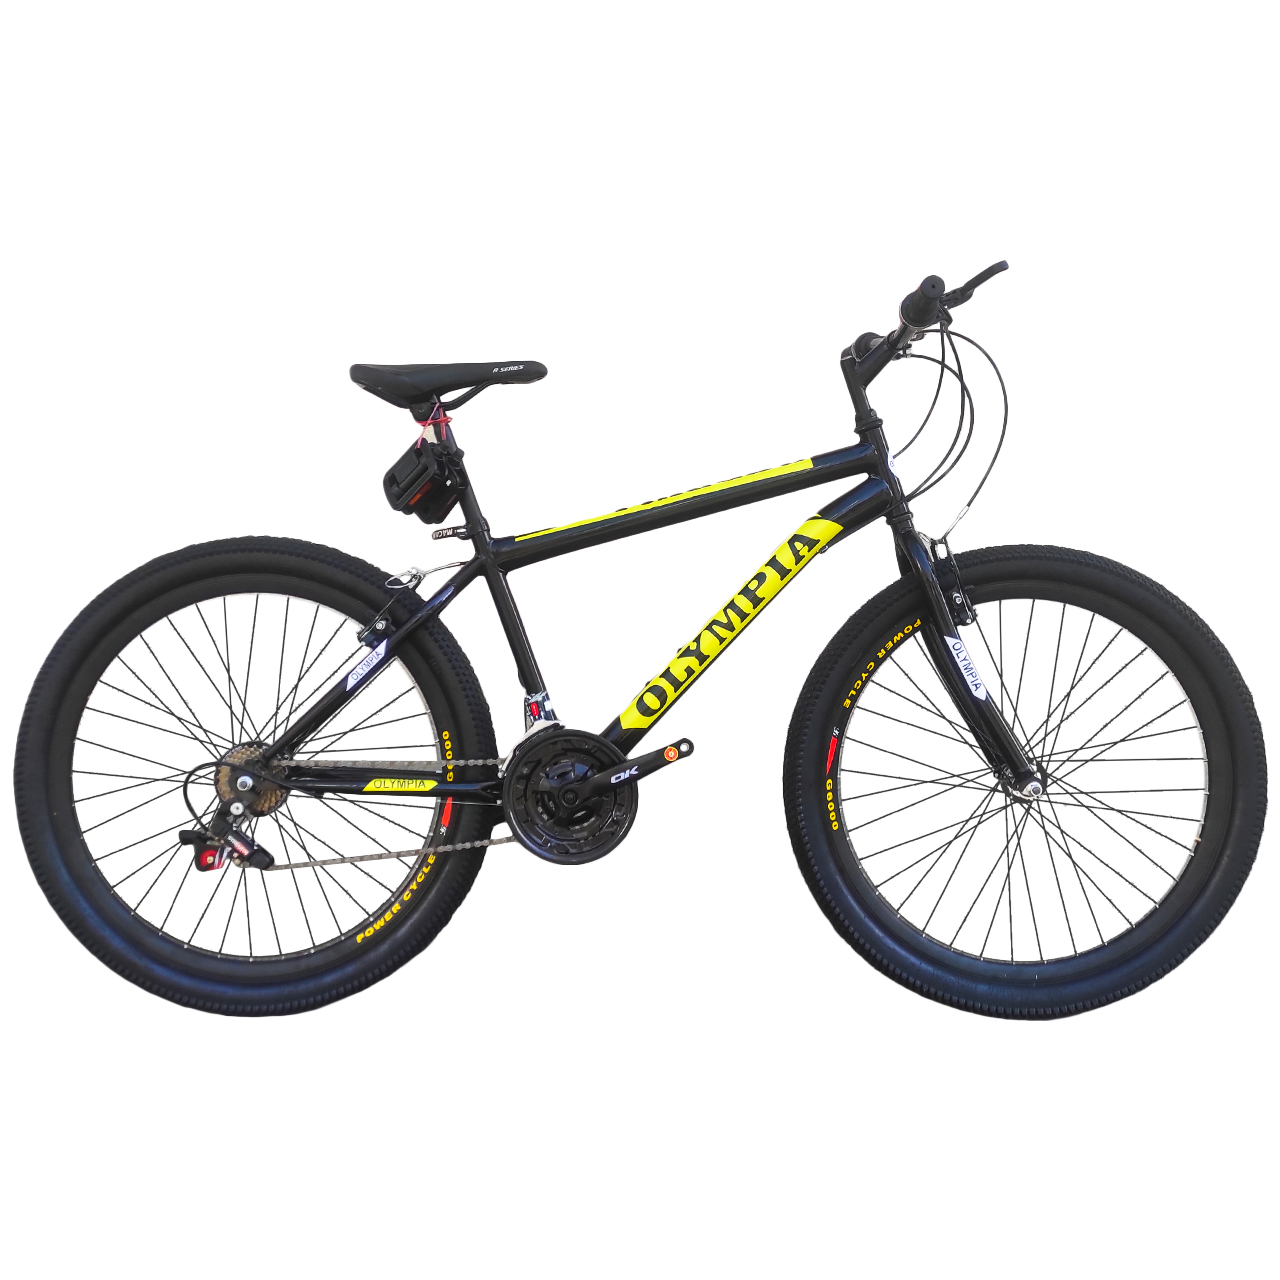 نکته خرید - قیمت روز دوچرخه کوهستان المپیا مدل REDBULL.S80 سایز26 خرید